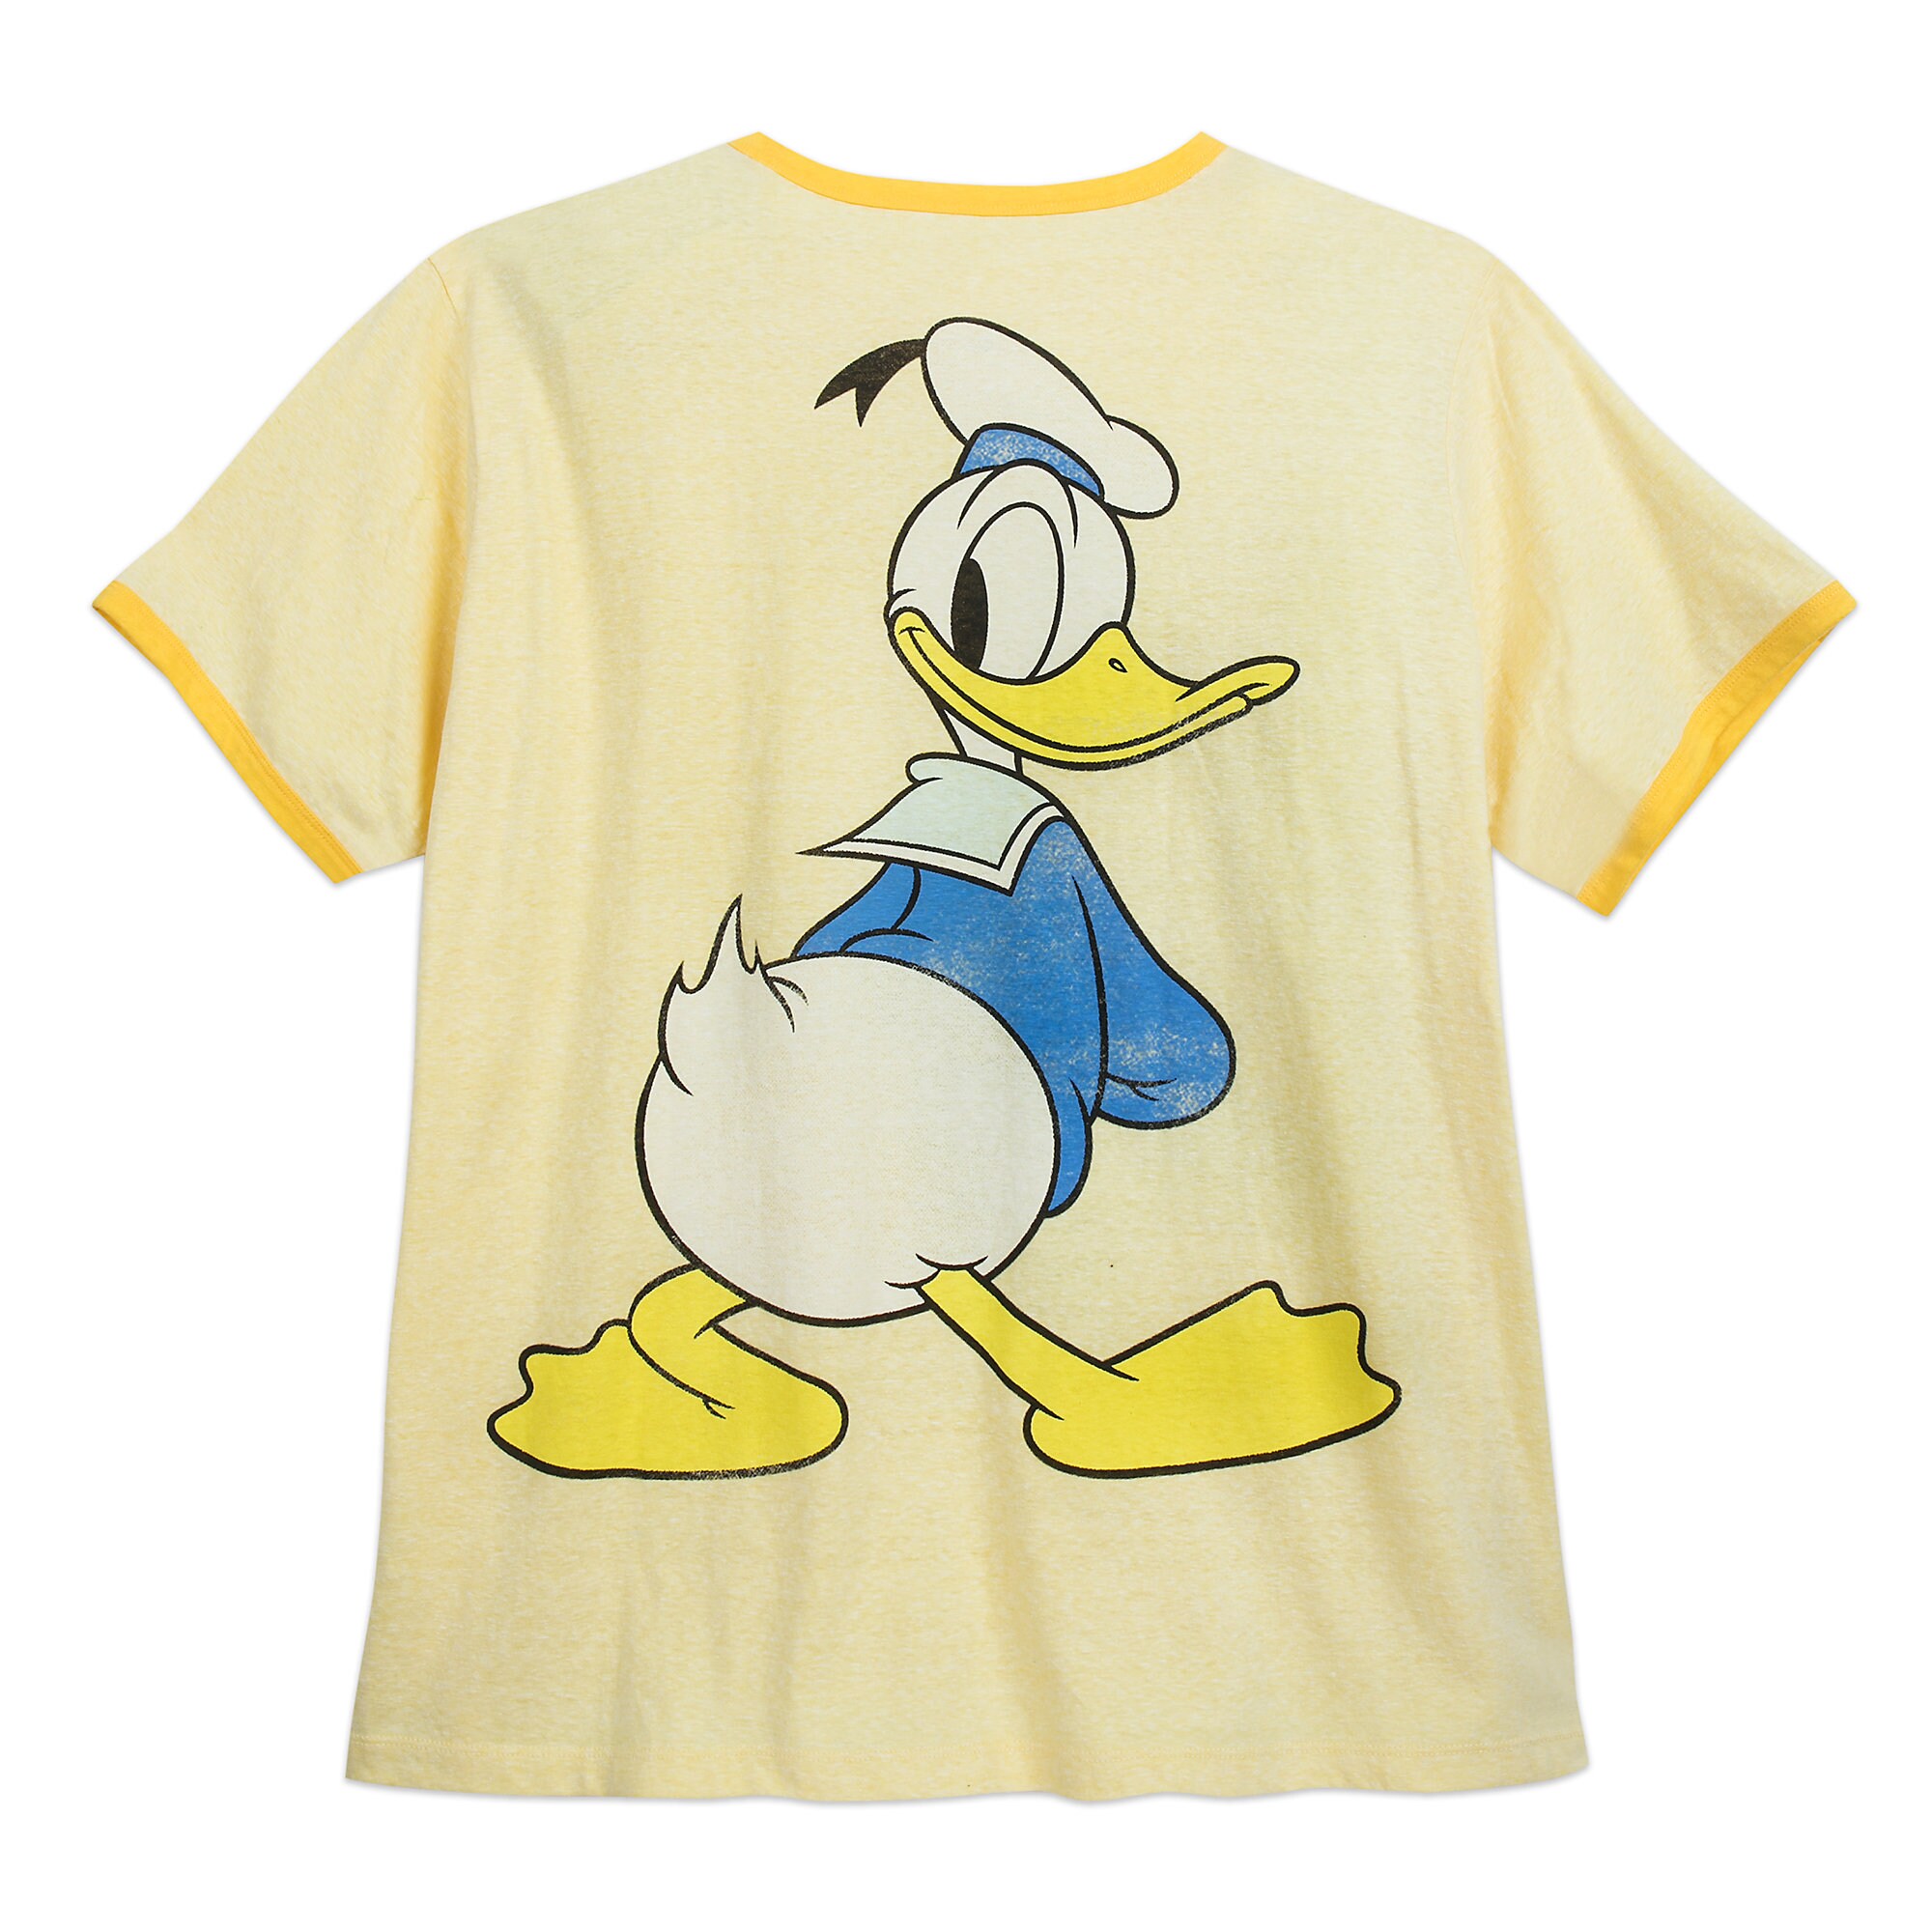 Donald Duck Ringer T-Shirt for Men - Extended Size